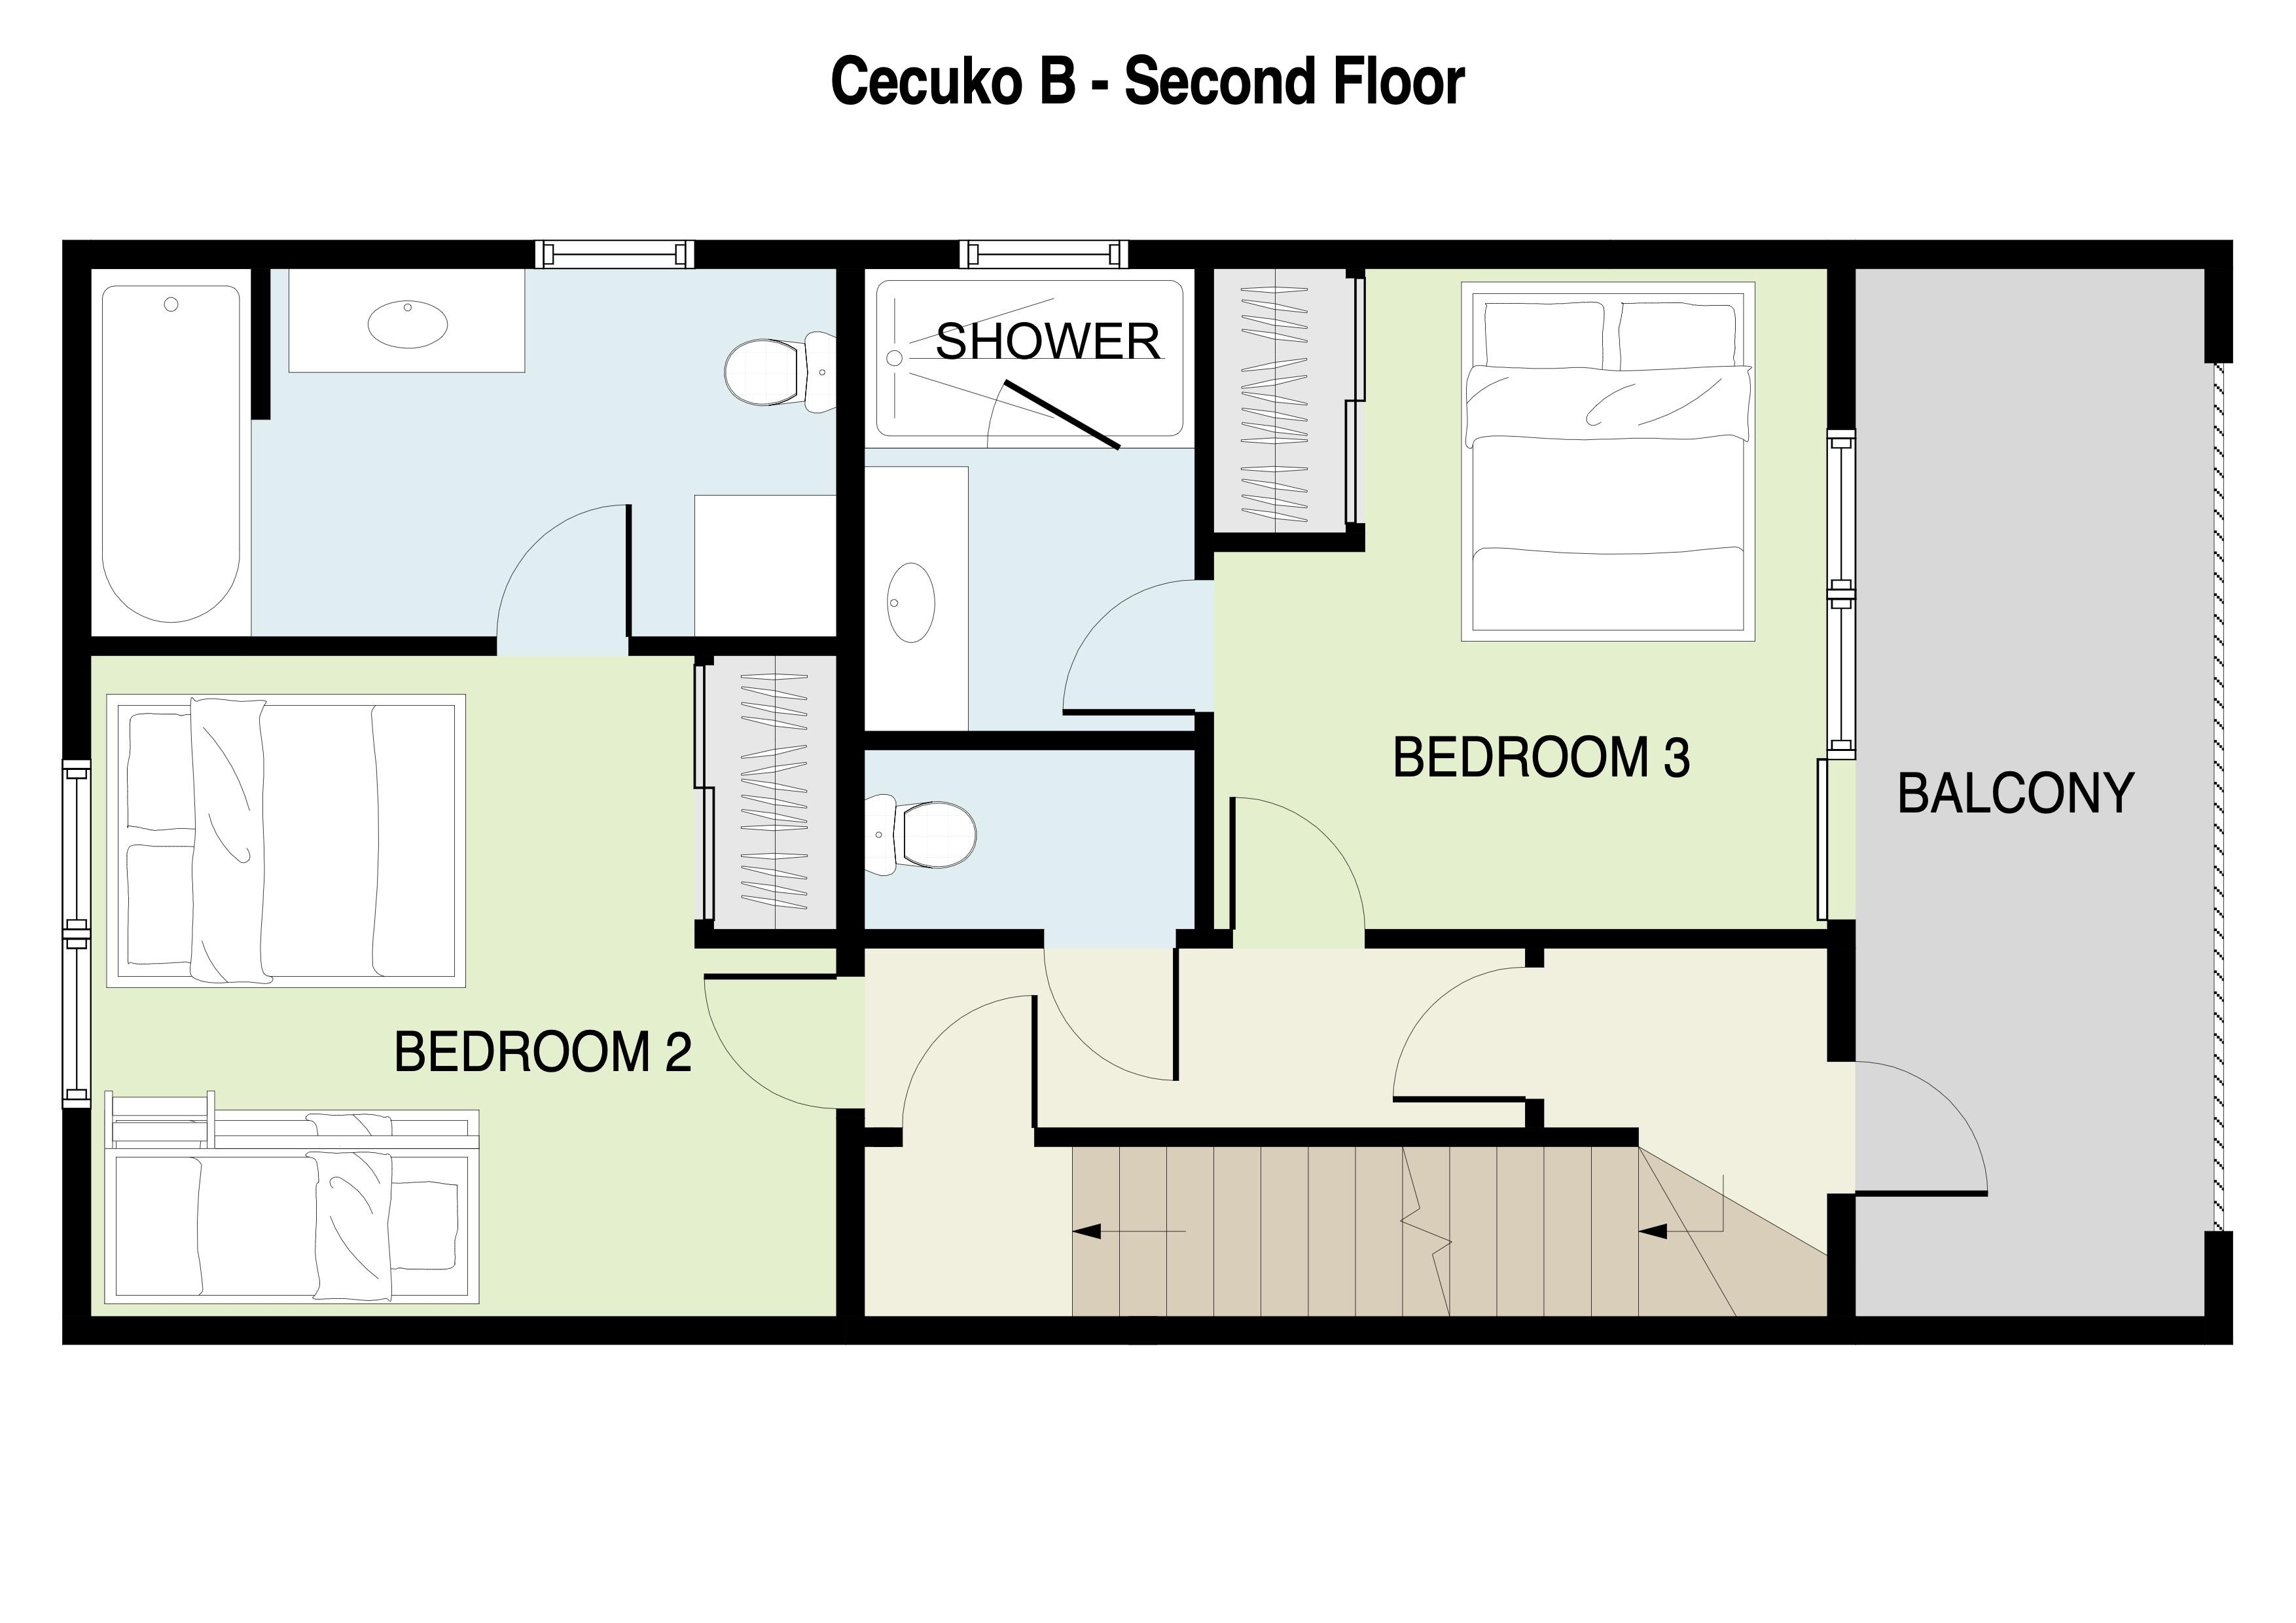 Cecuko B 2nd Floor Plans